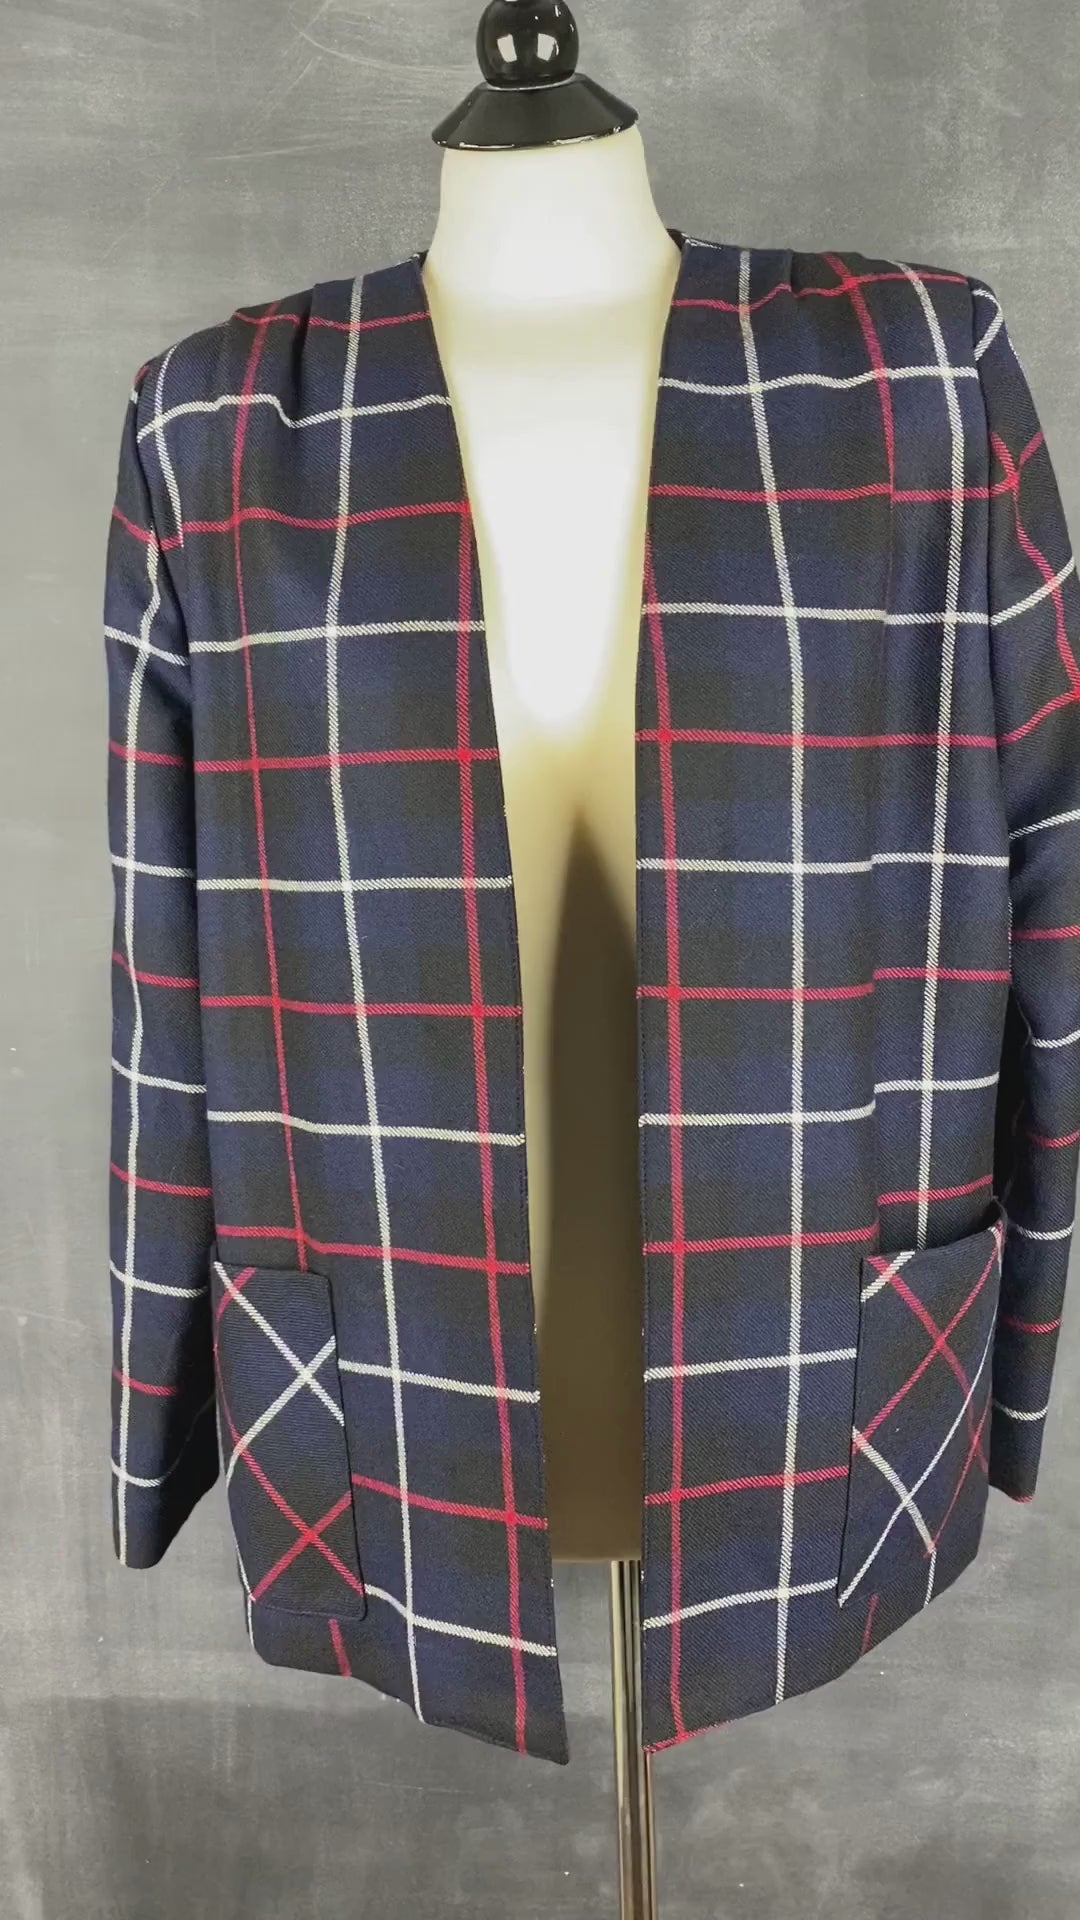 Veste blazer à carreaux en laine vintage, medium. Vue de la vidéo qui présente la veste.